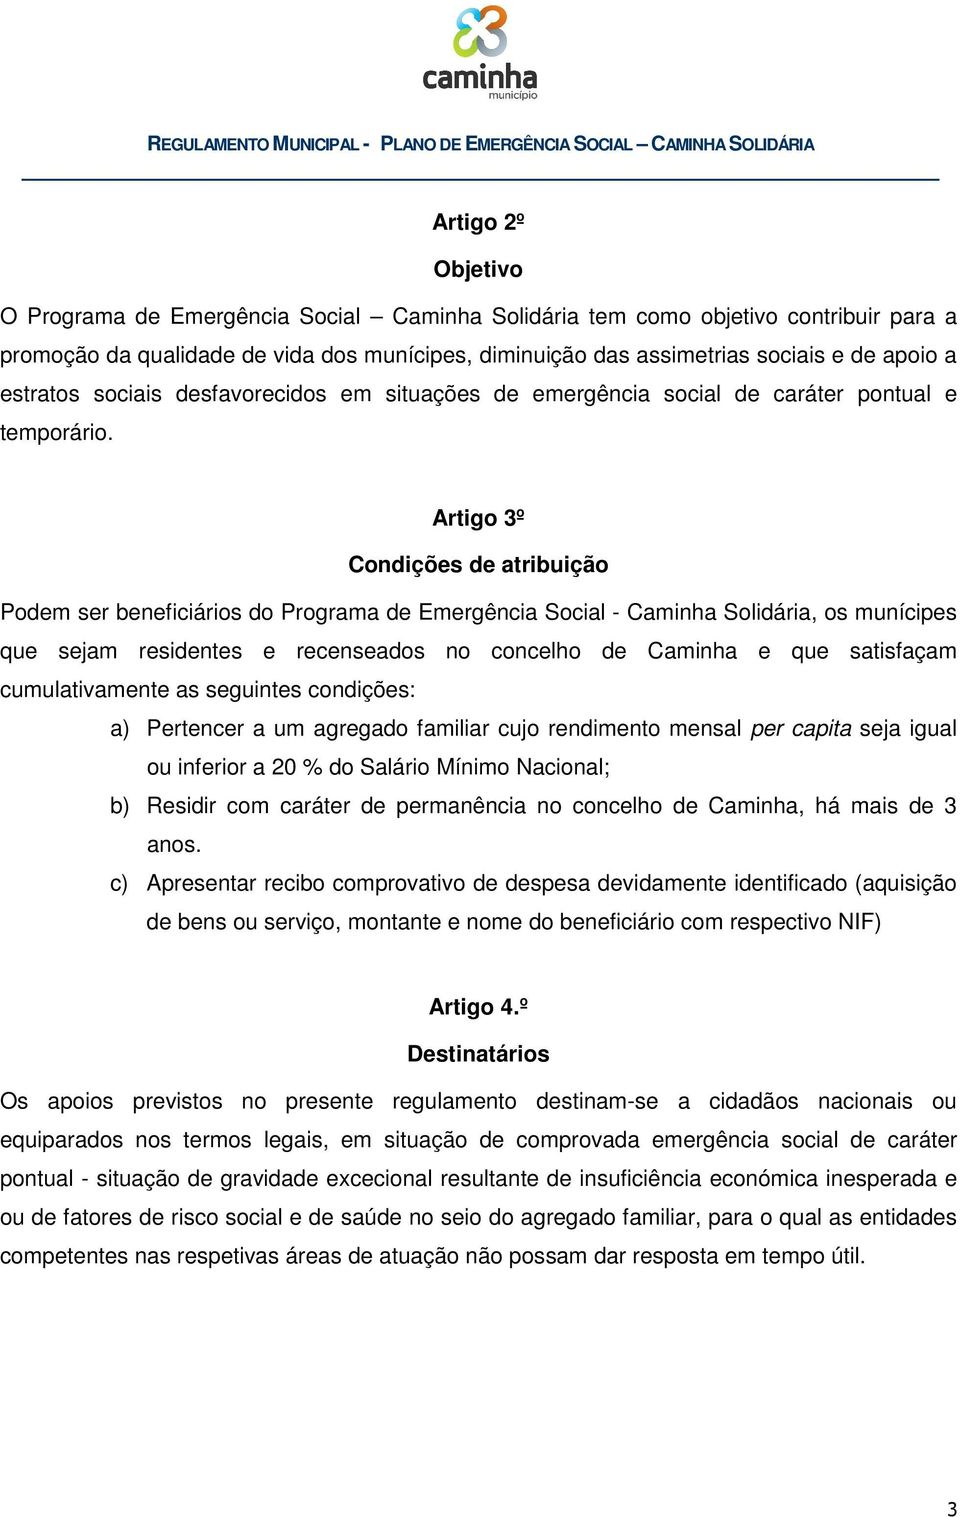 Artigo 3º Condições de atribuição Podem ser beneficiários do Programa de Emergência Social - Caminha Solidária, os munícipes que sejam residentes e recenseados no concelho de Caminha e que satisfaçam